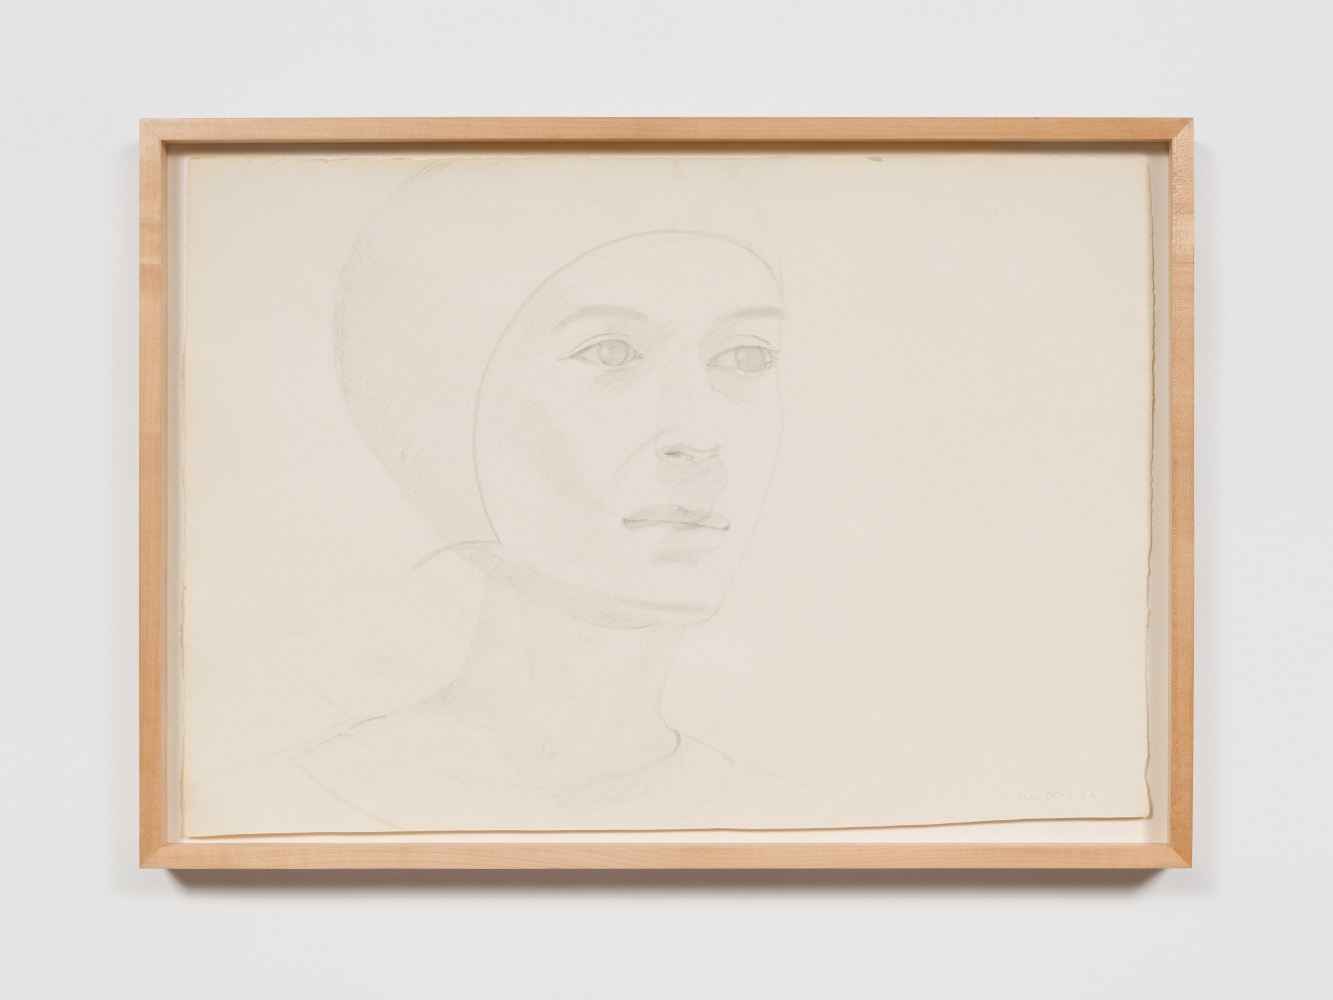 Alex Katz
Bathing Cap, 1984

pencil on paper

15 3/4 x 22 1/2 in. / 40&amp;nbsp;x 57.2 cm